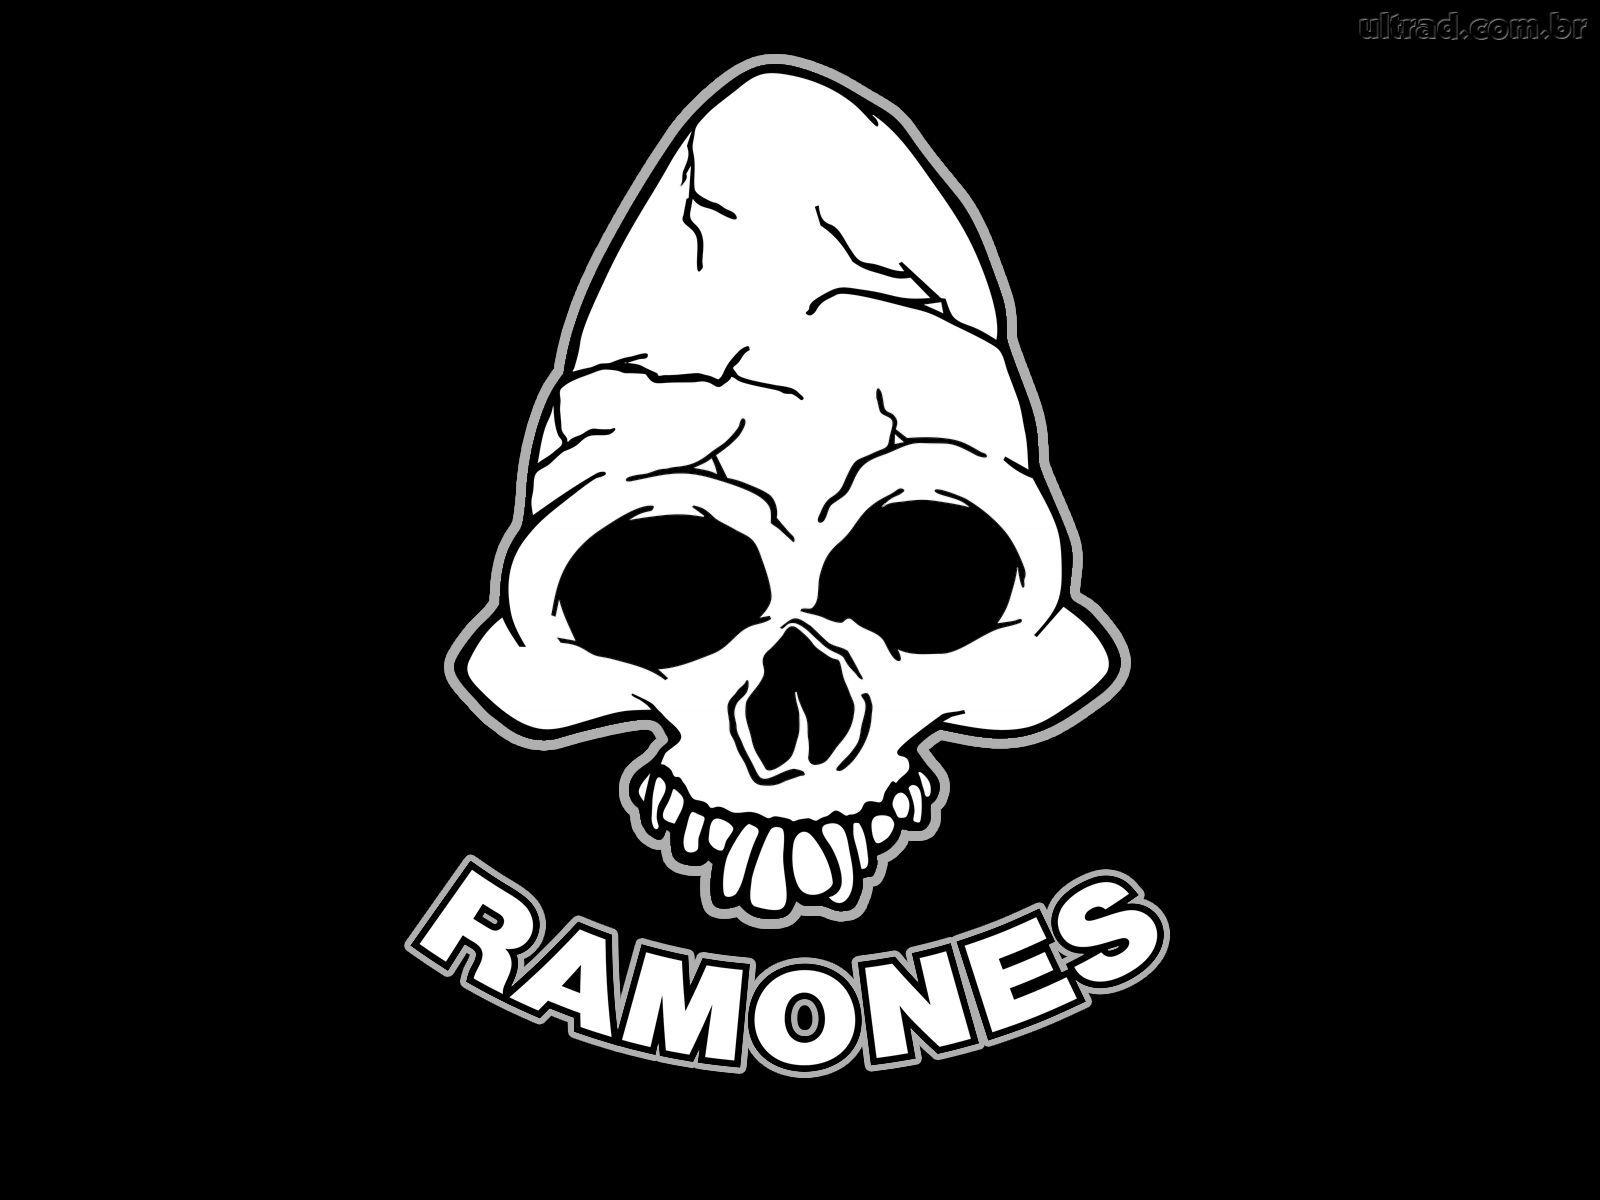 Ramones HD Wallpaper for desktop download